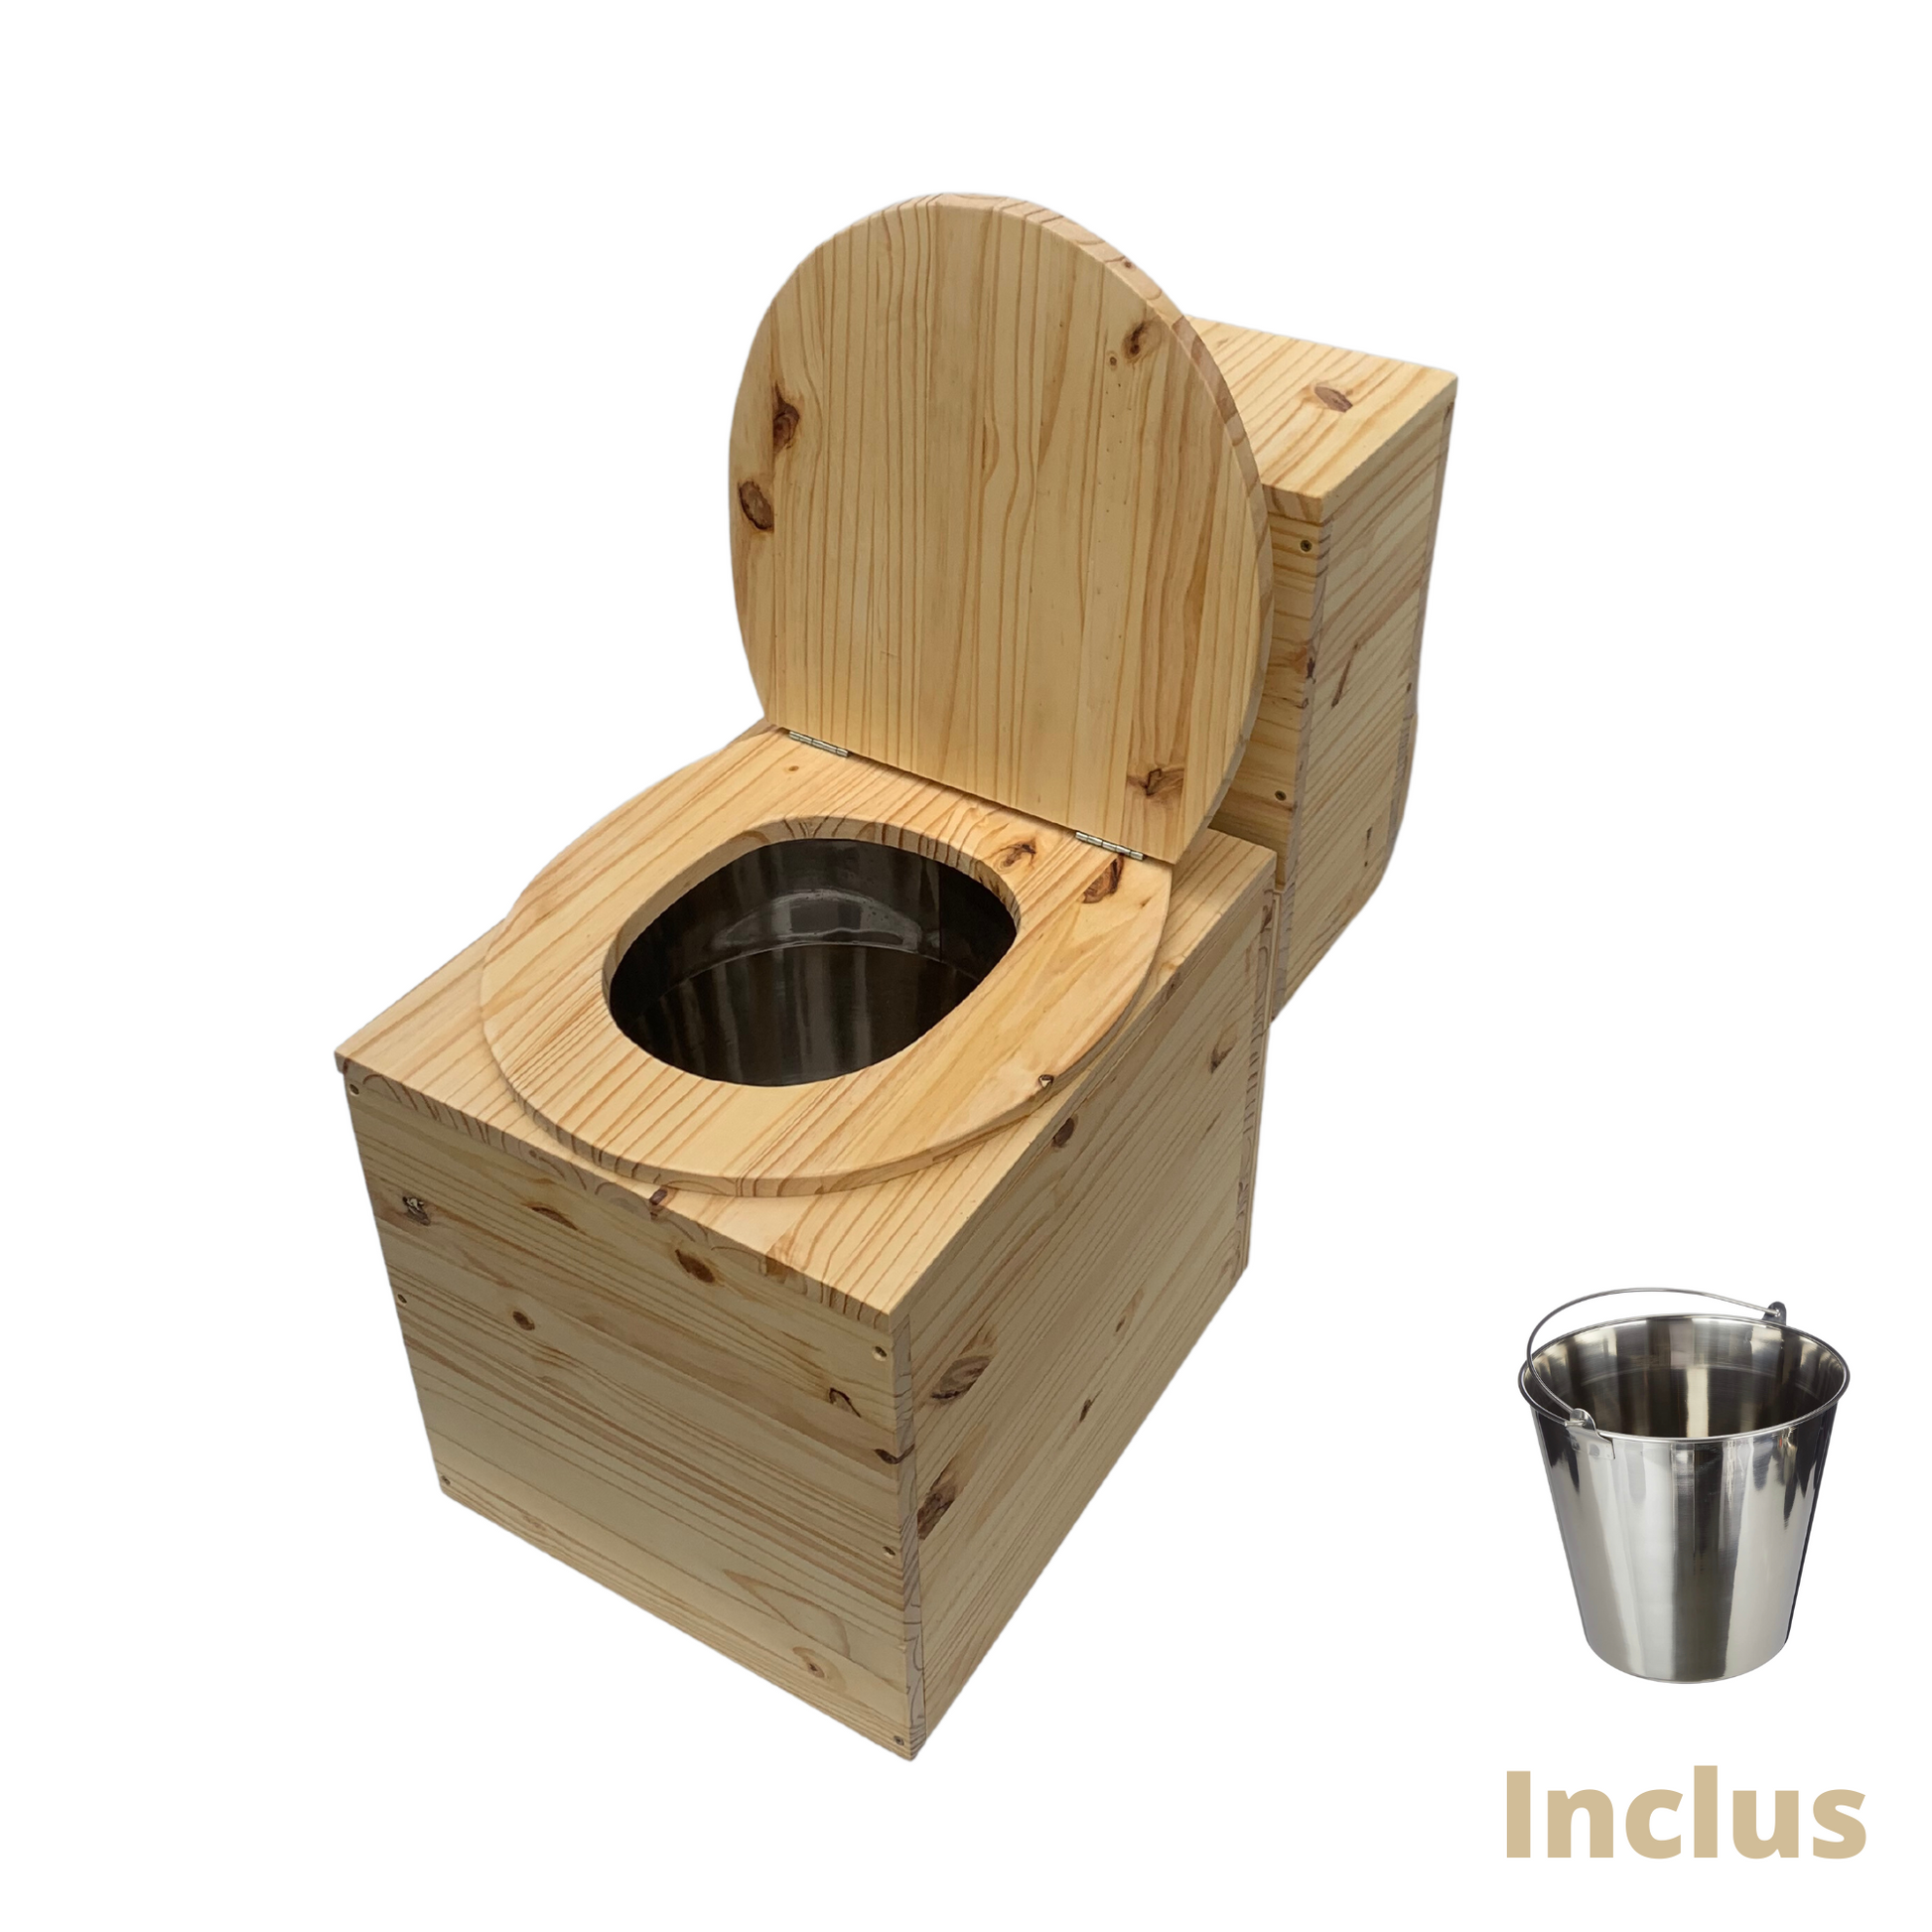 Toilette sèche en bois massif avec compartiment copeaux à l